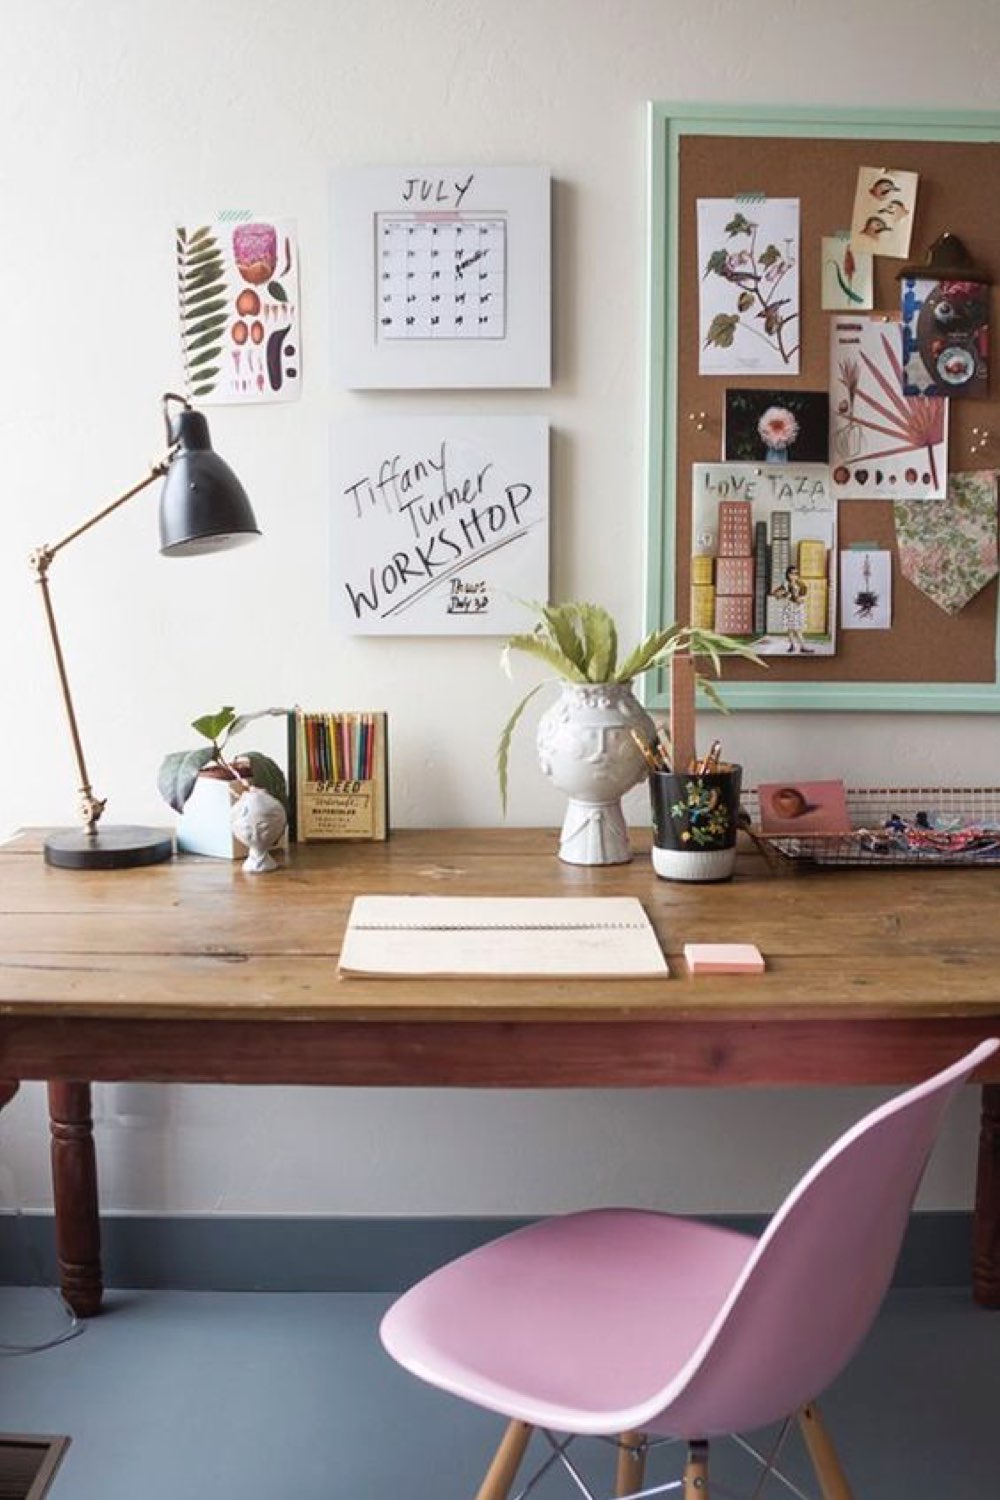 comment reussir decoration bureau chez soi petit espace de travail en bois chaise rose eames décor mural inspirant lampe de bureau articulée